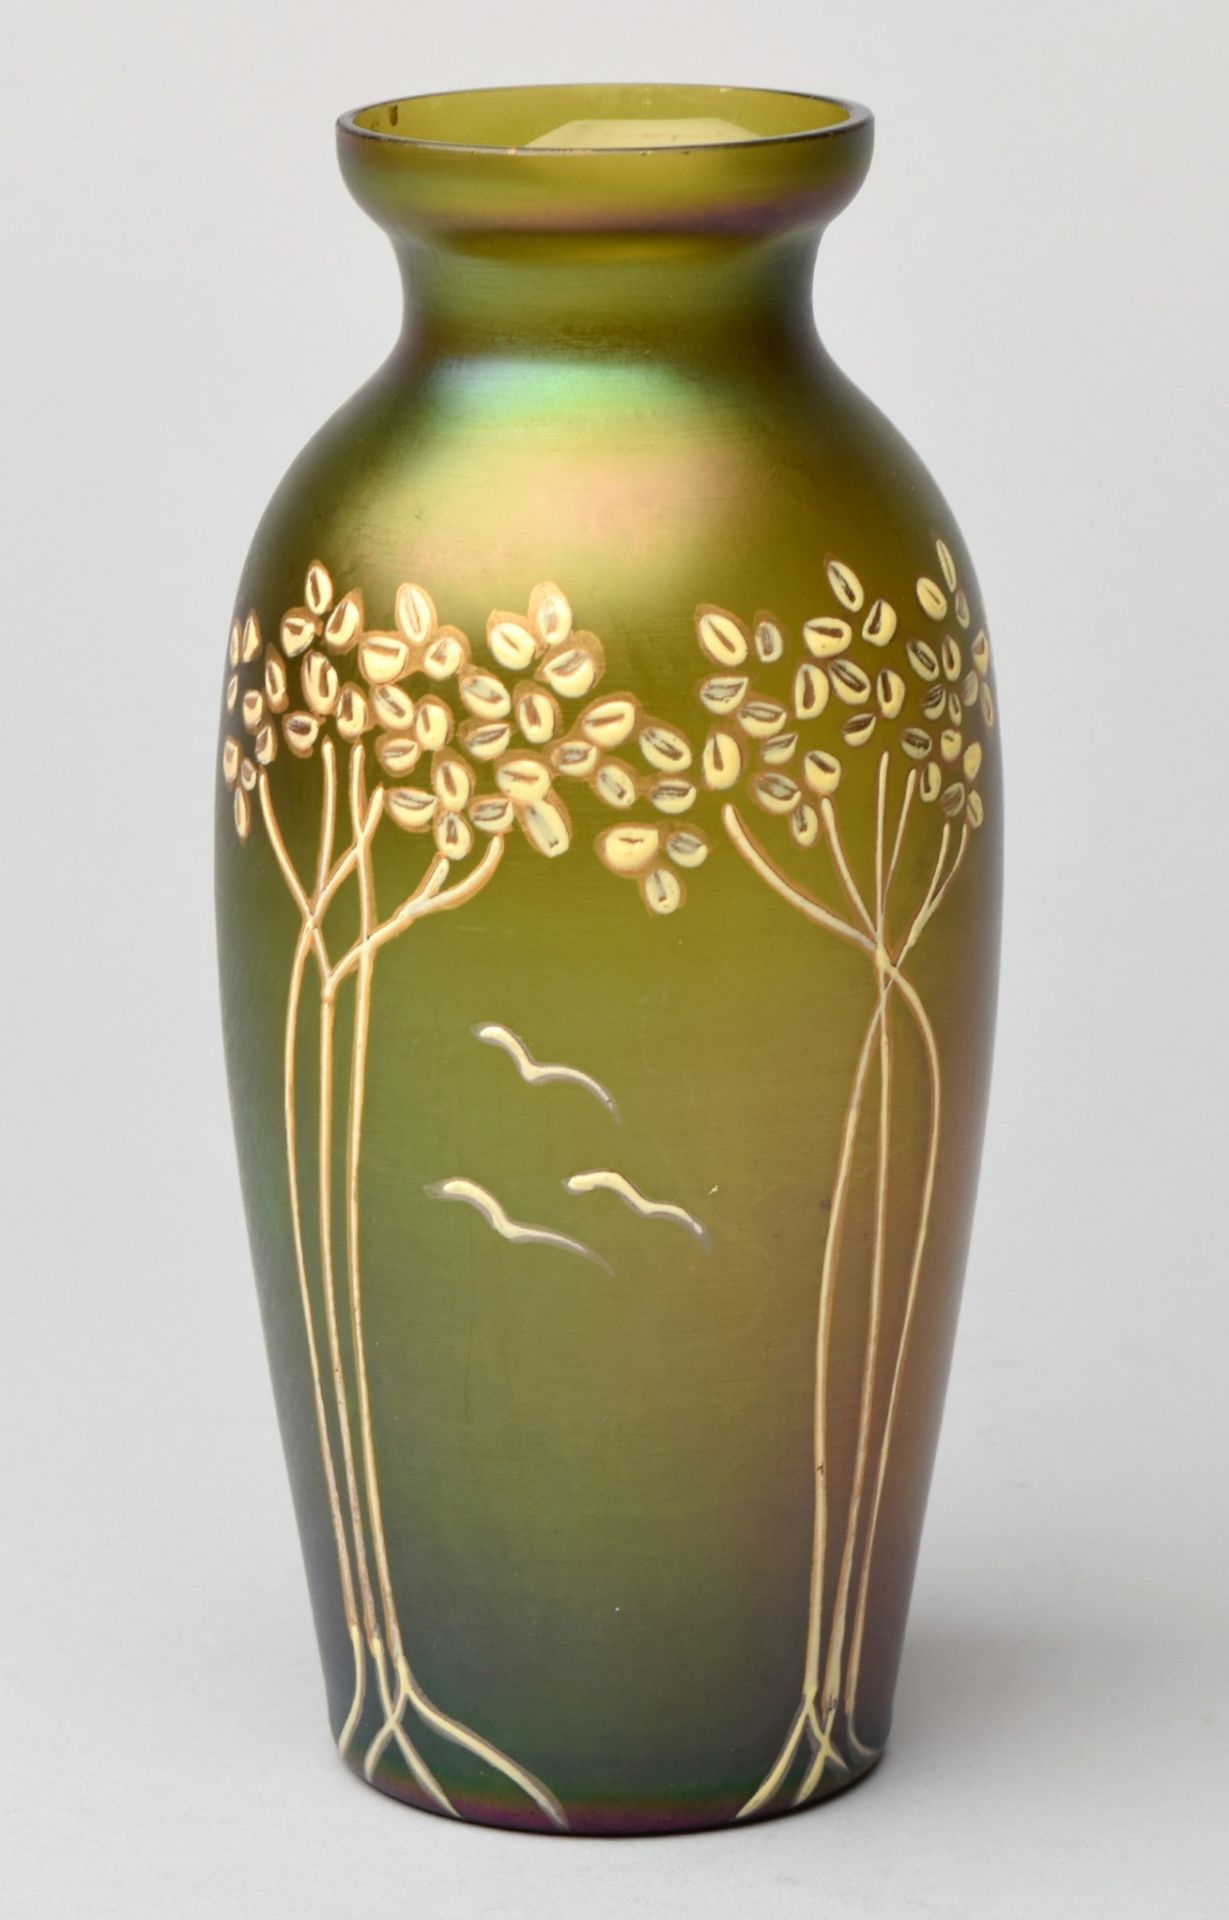 Jugendstil-Vase moosgrün eingefärbtes Glas, zur Schulter hin leicht gebauchte Form mit geschnürt - Image 2 of 2